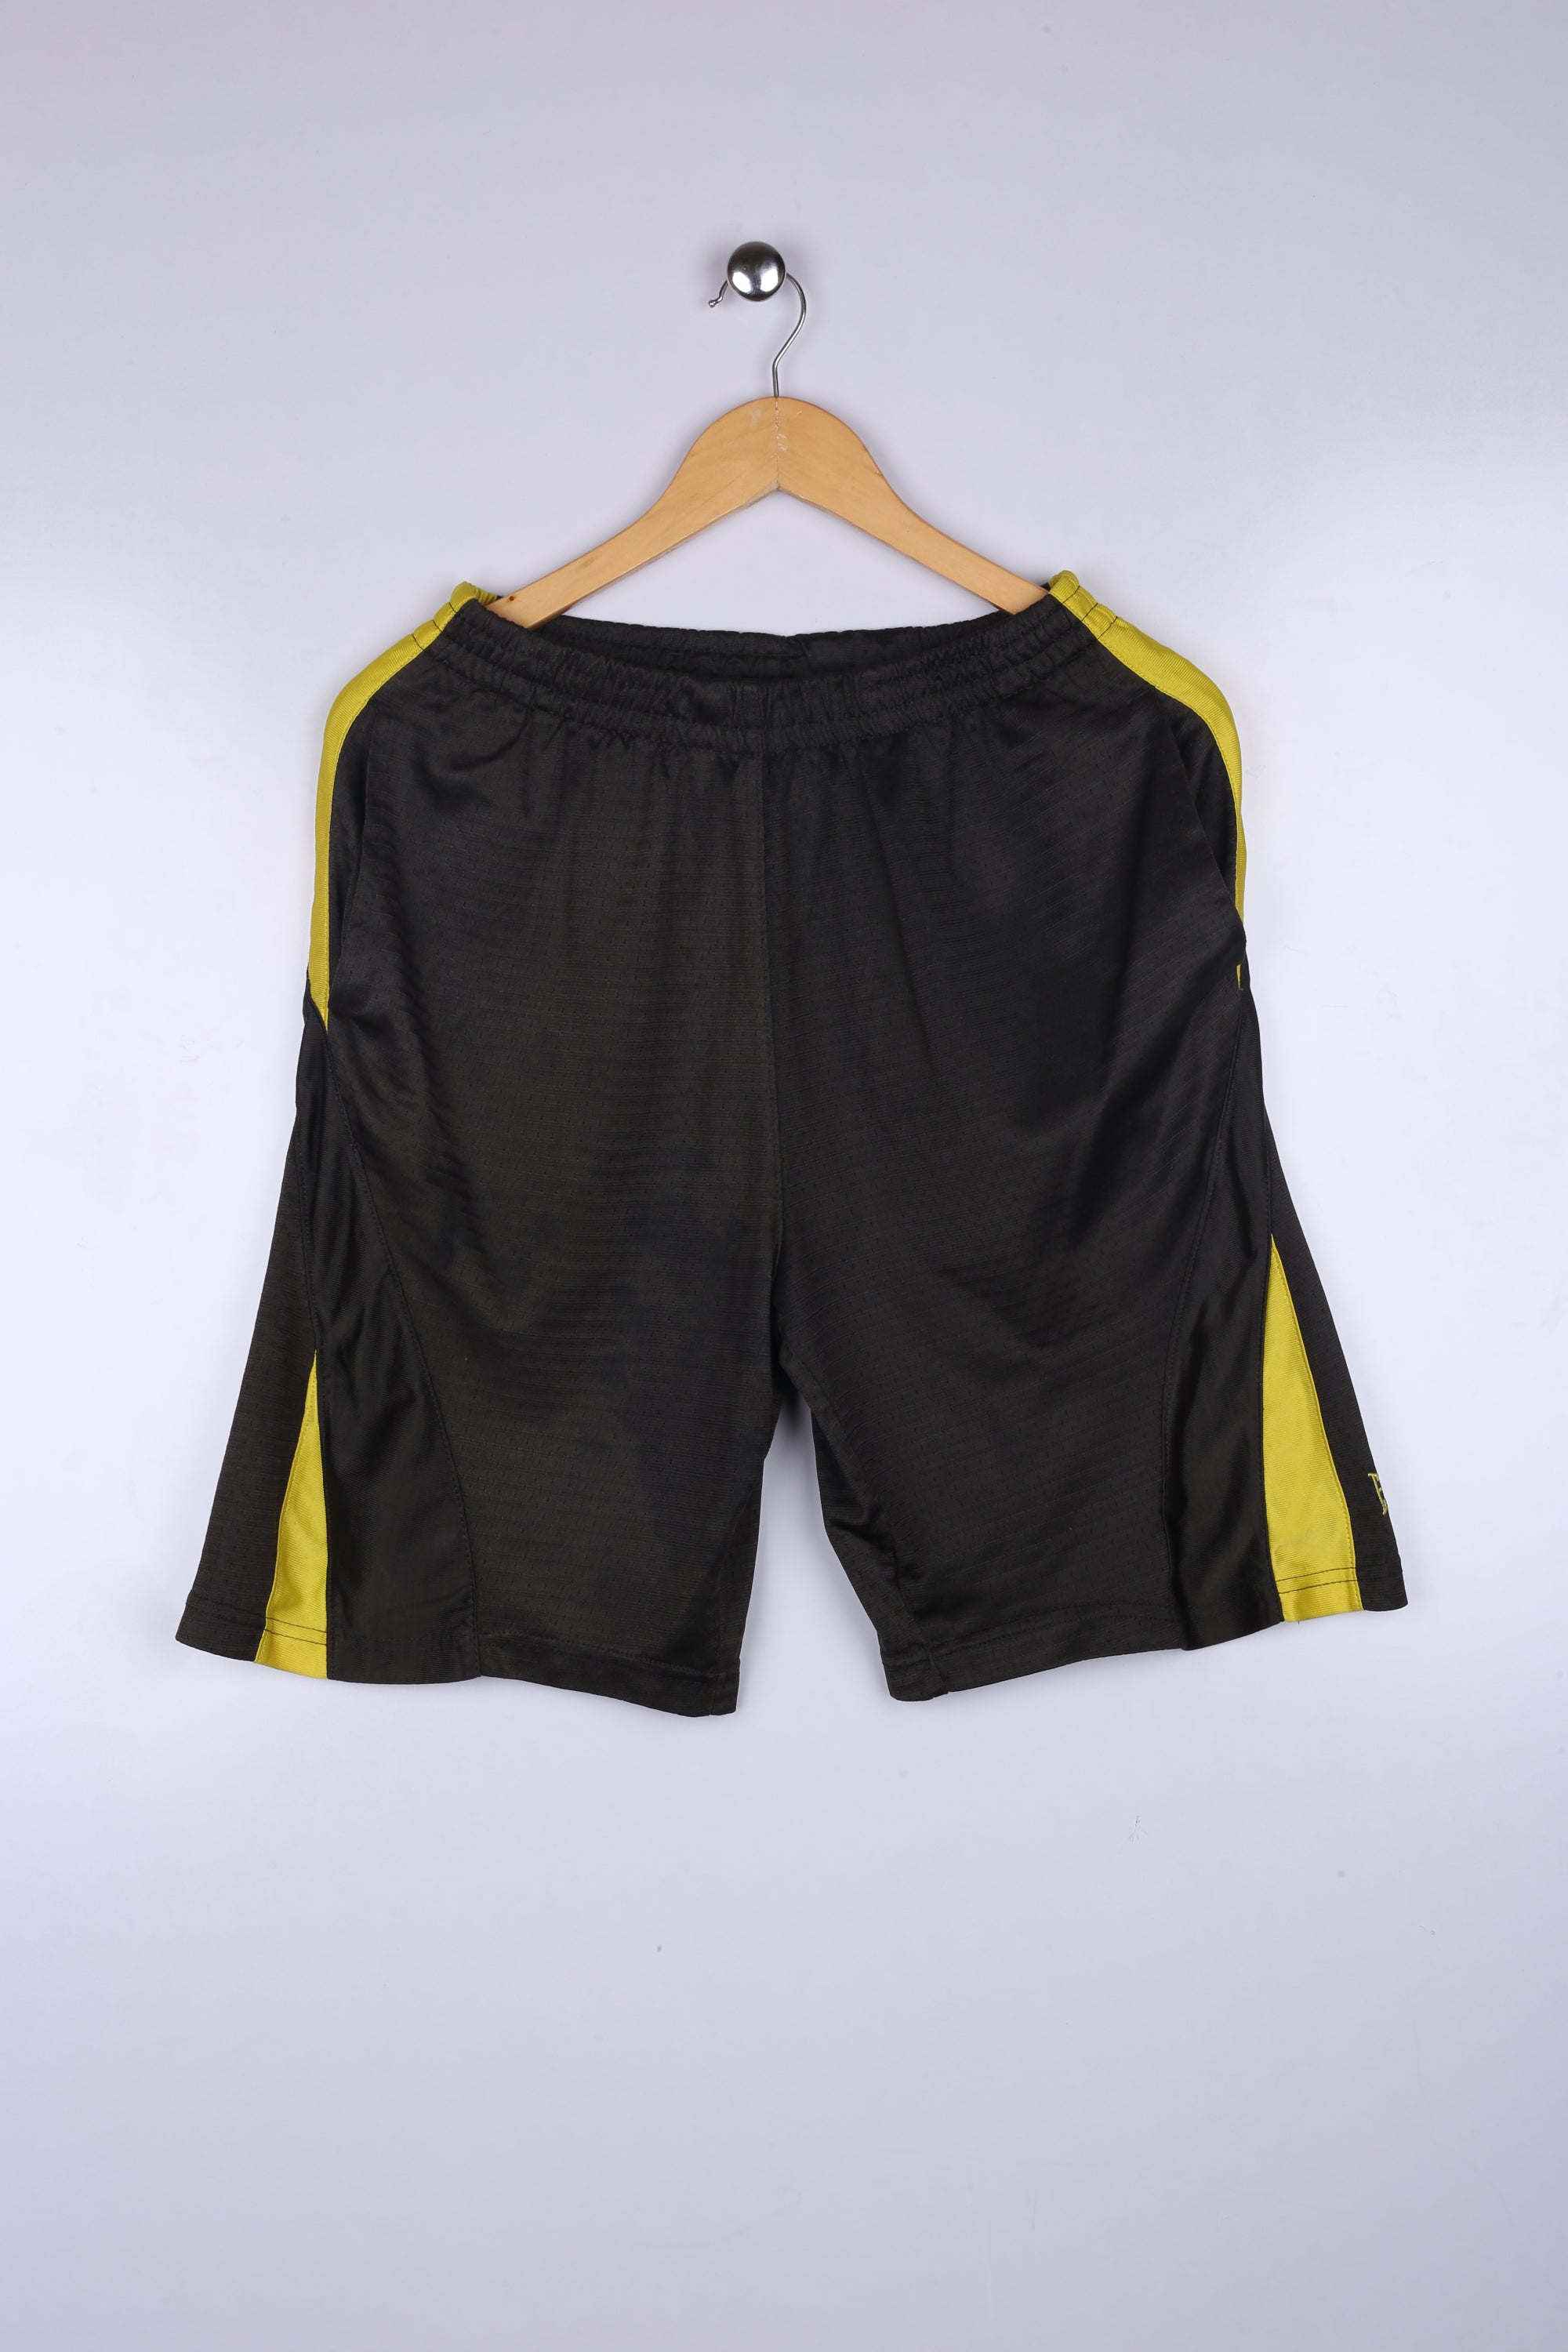 Vintage Everlast Shorts Black Medium